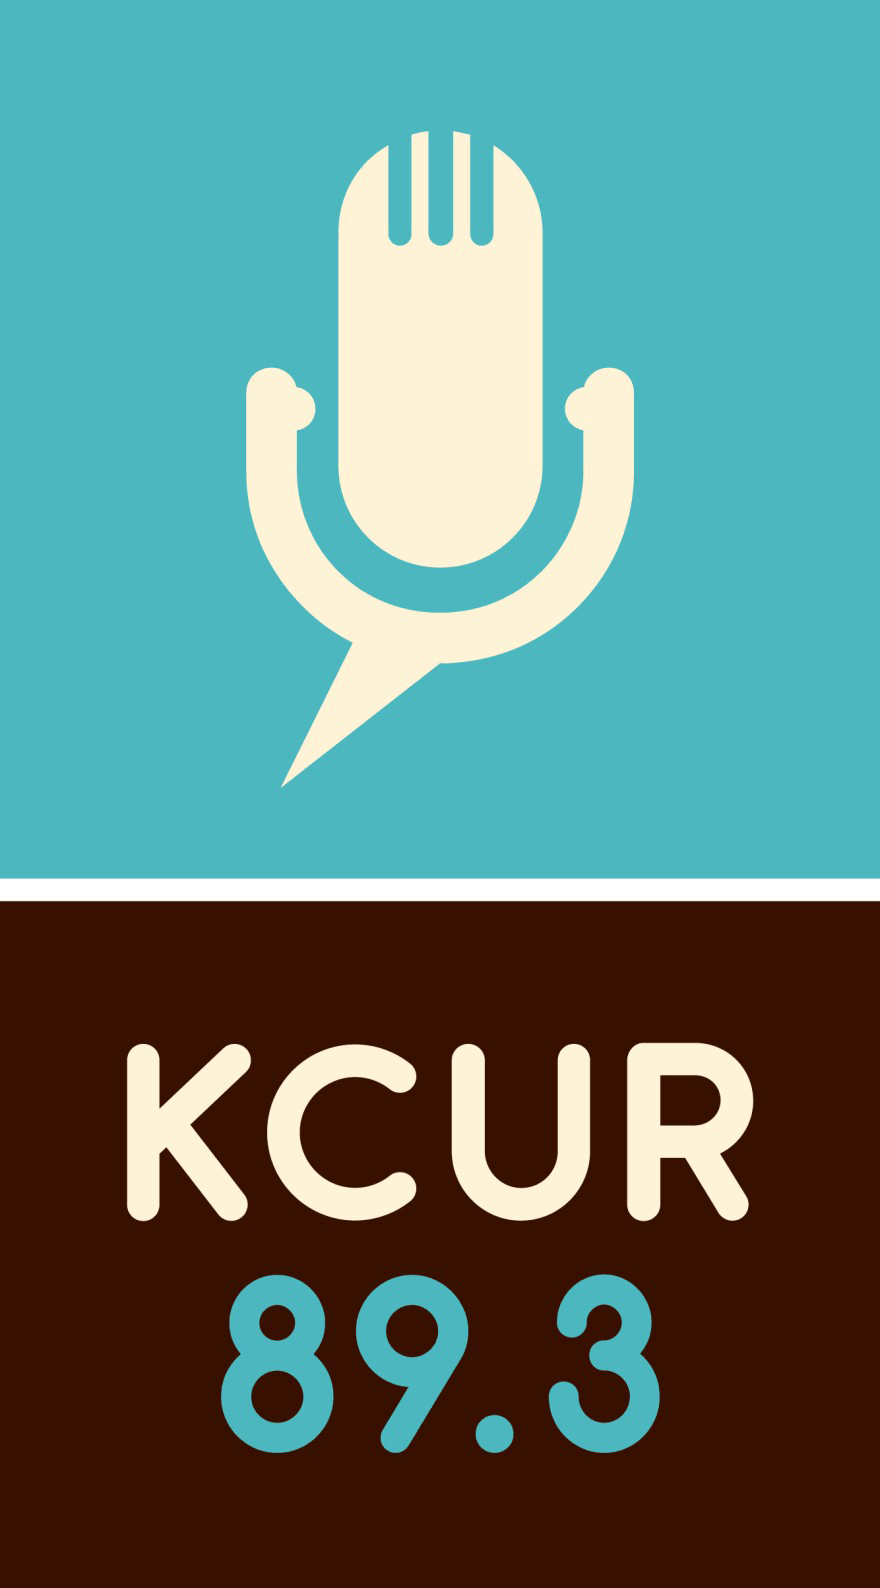 KCUR 89.3 NPR in Kansas City